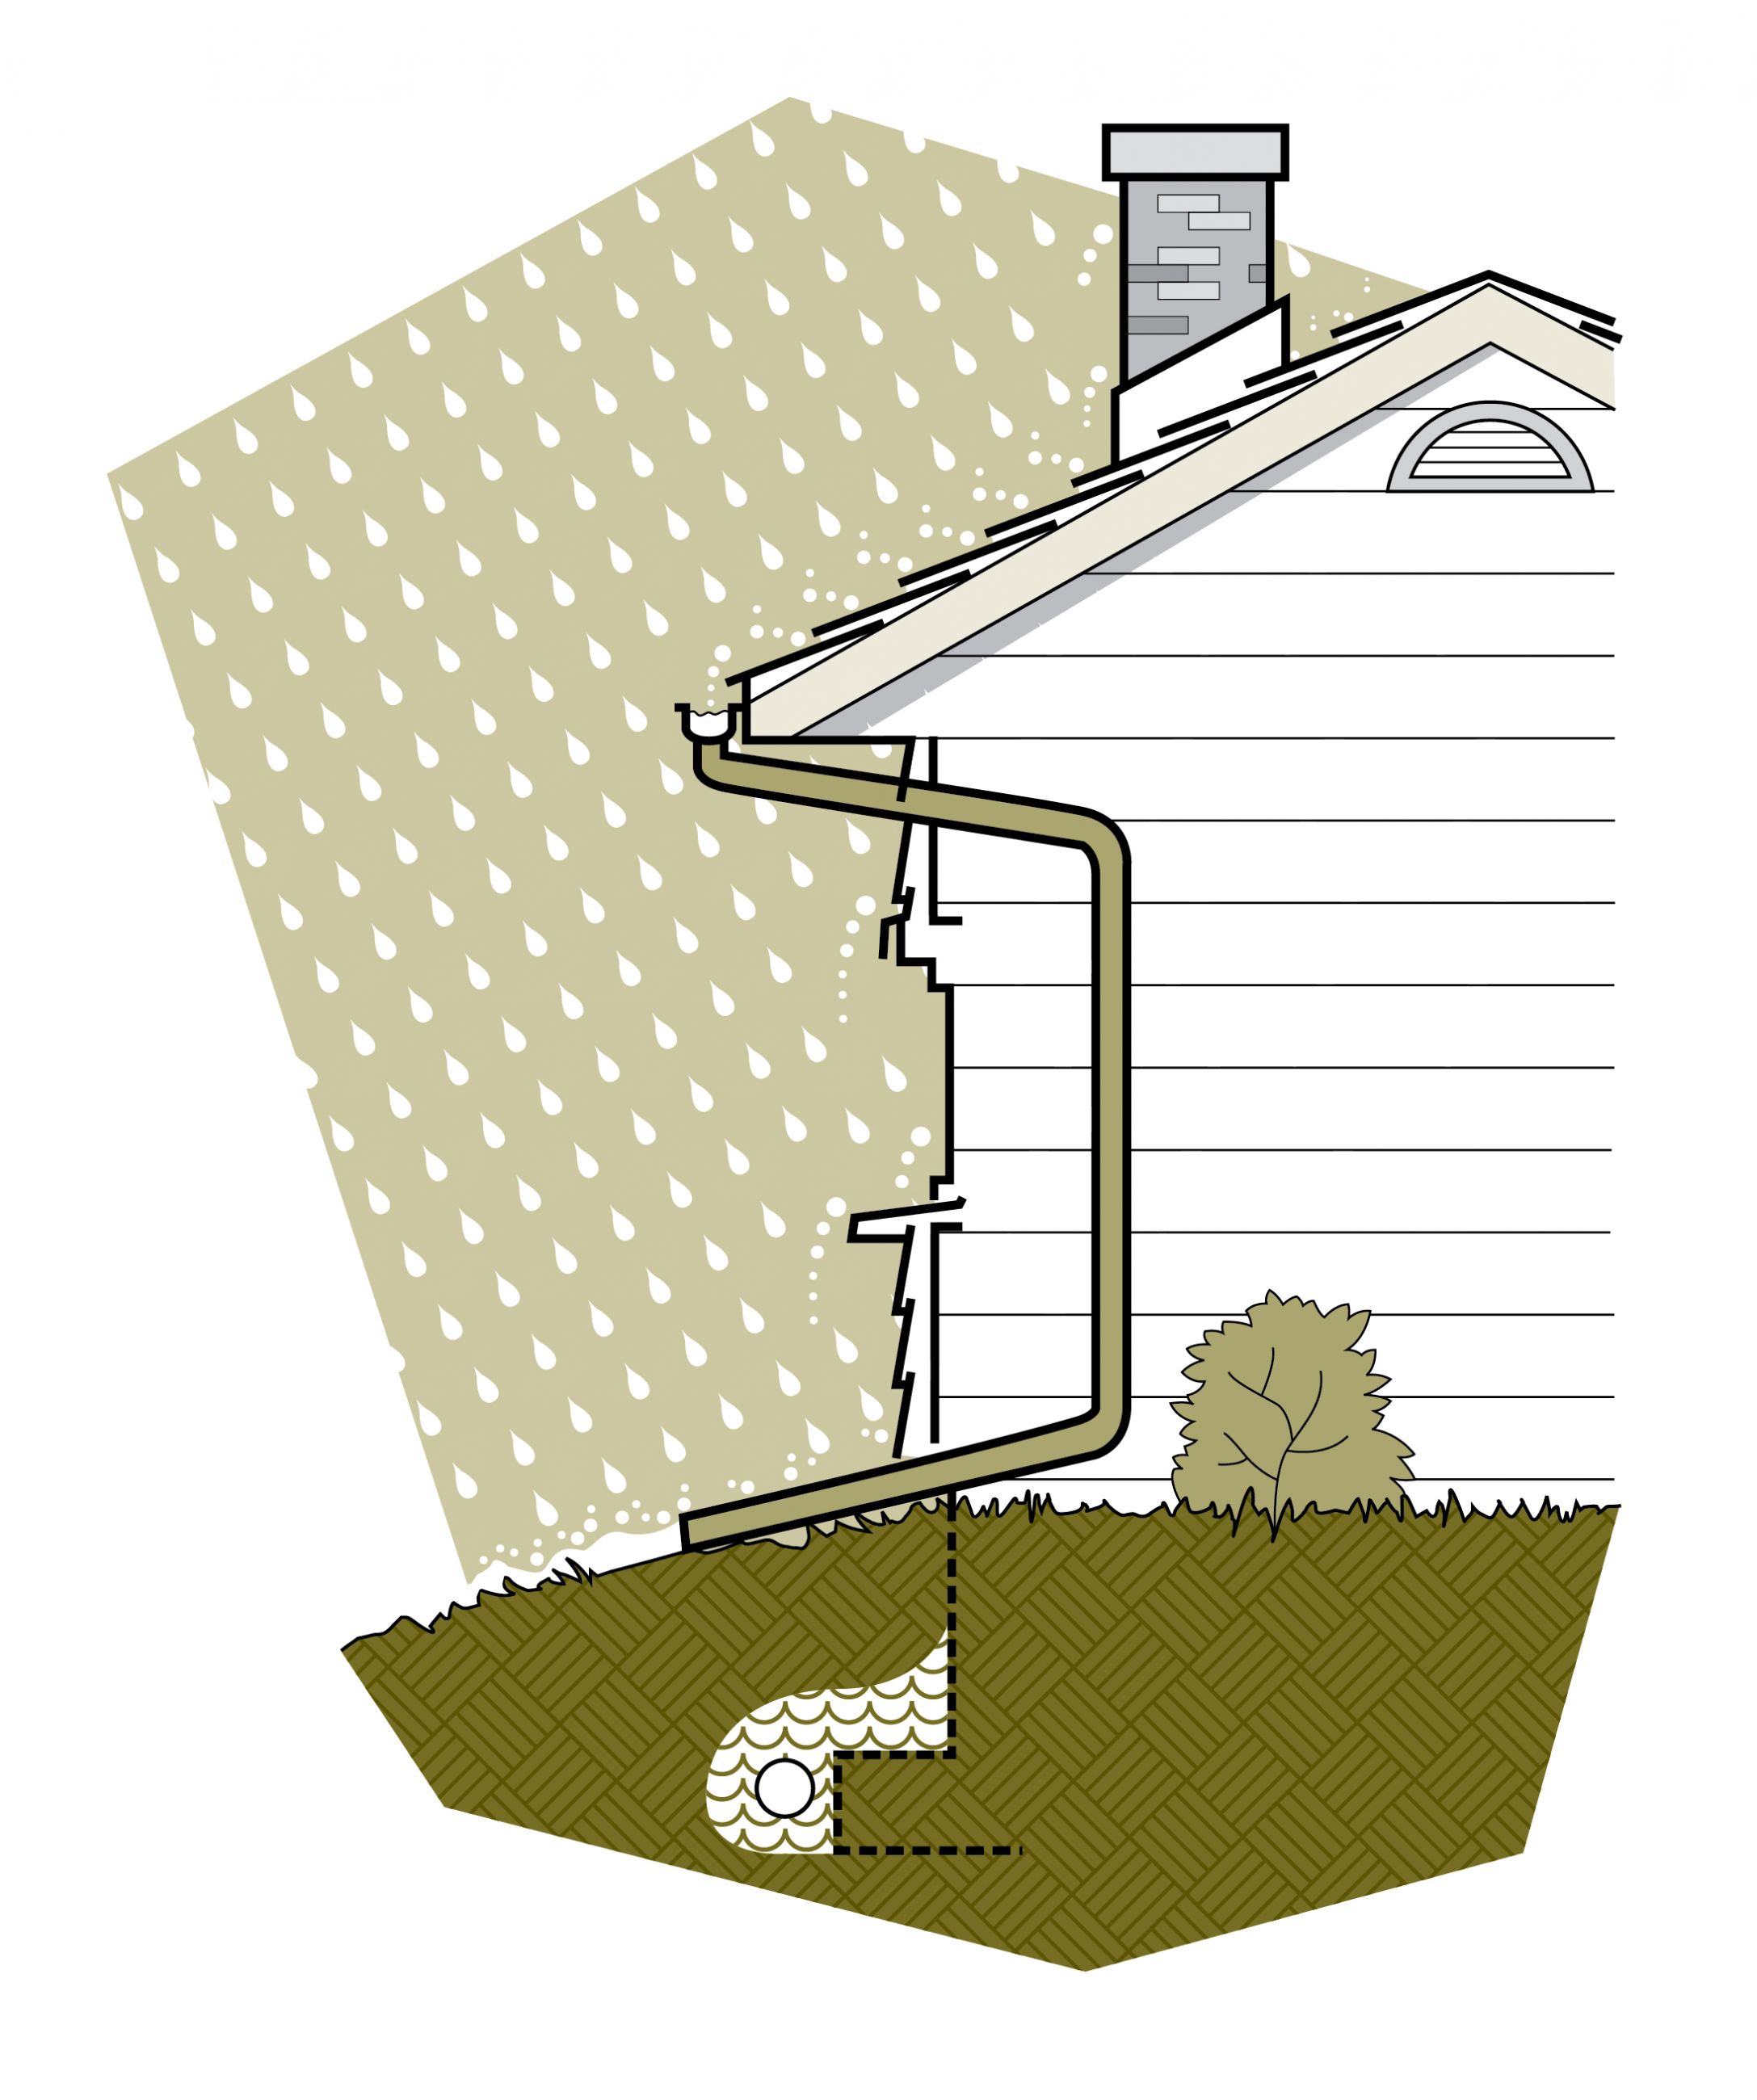 L’enveloppe du bâtiment doit permettre d’évacuer l’eau du toit vers les semelles. 